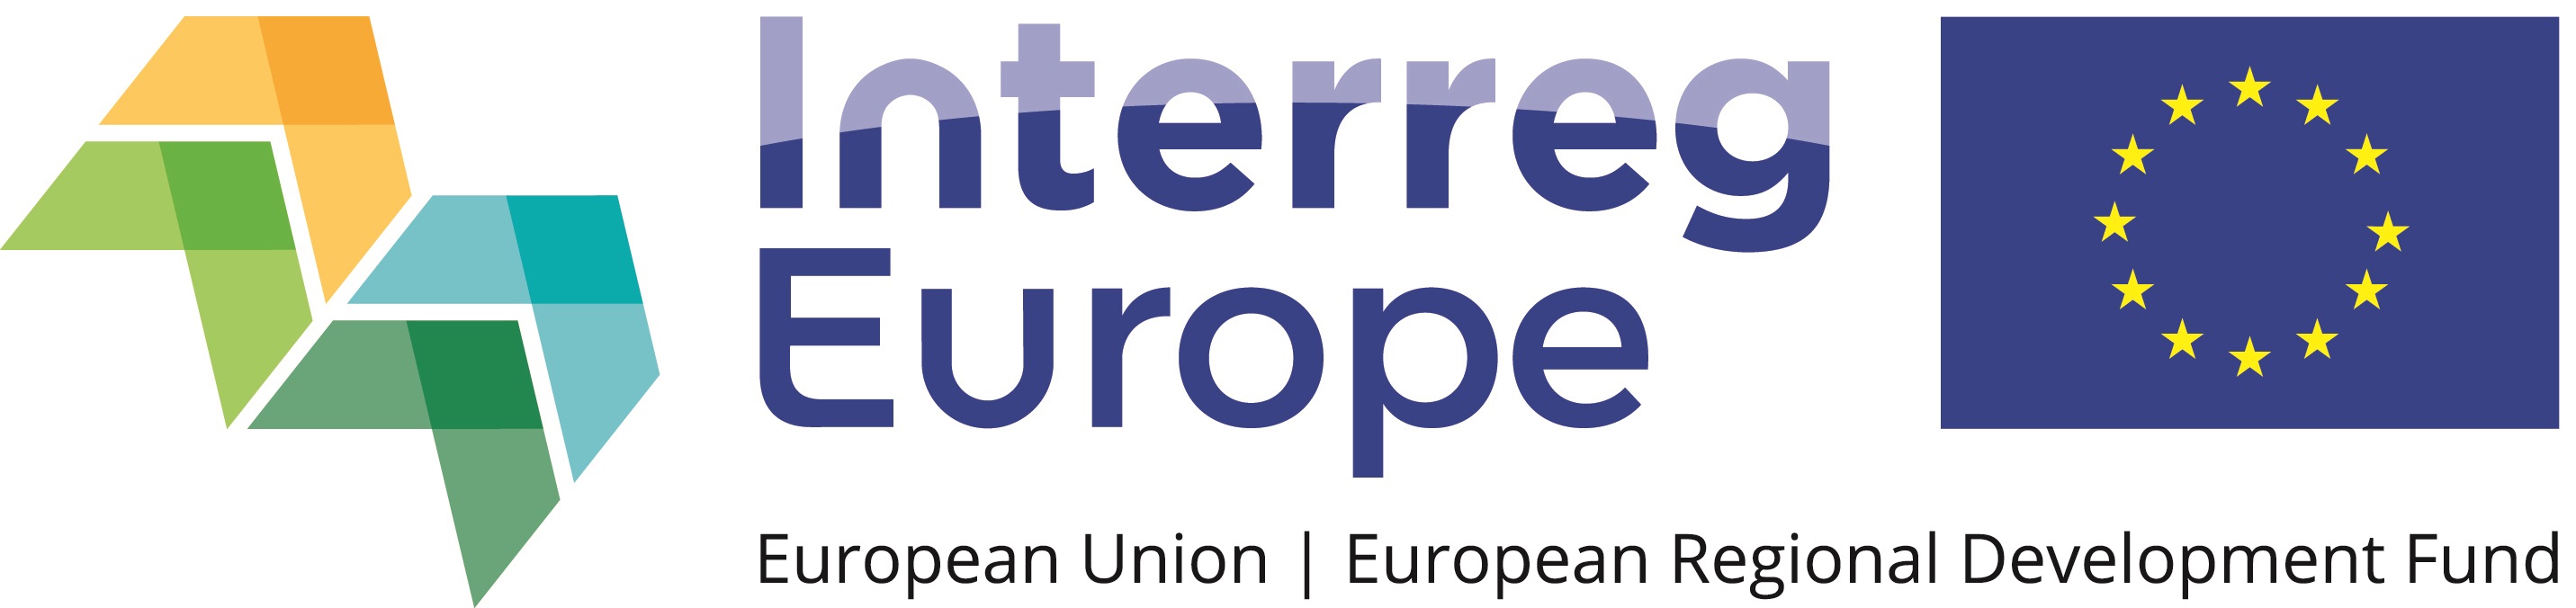 Interreg Europe logo QUADRI